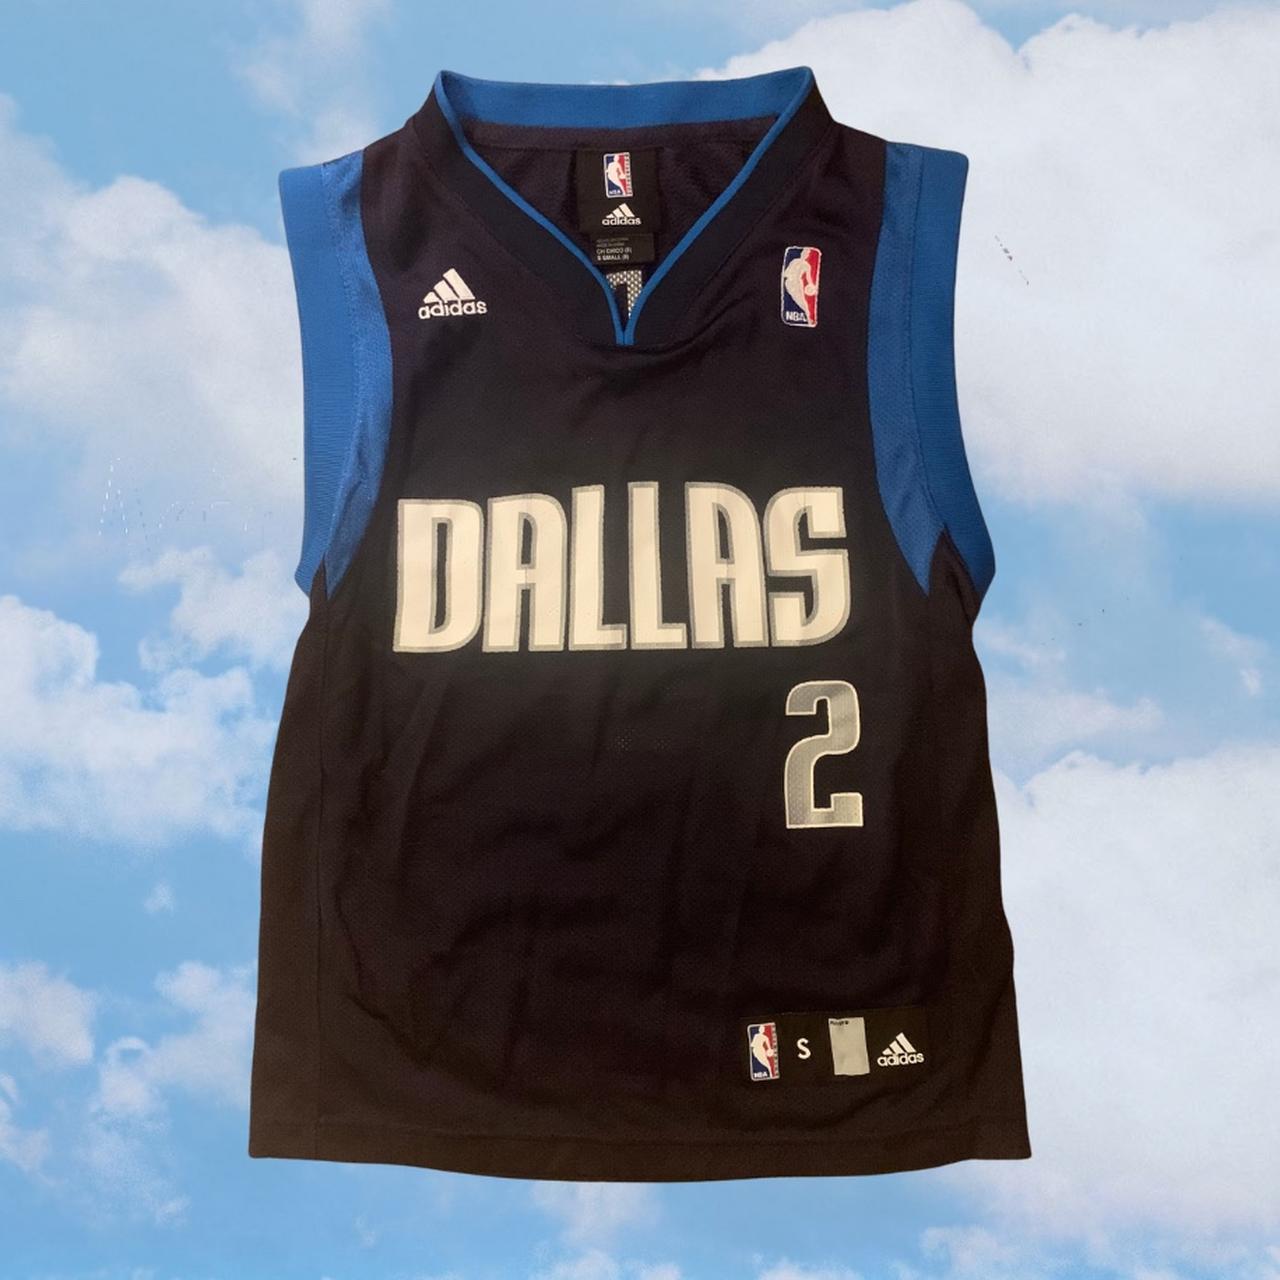 Jason Kidd Dallas Mavericks Jersey #dallasmavericks - Depop